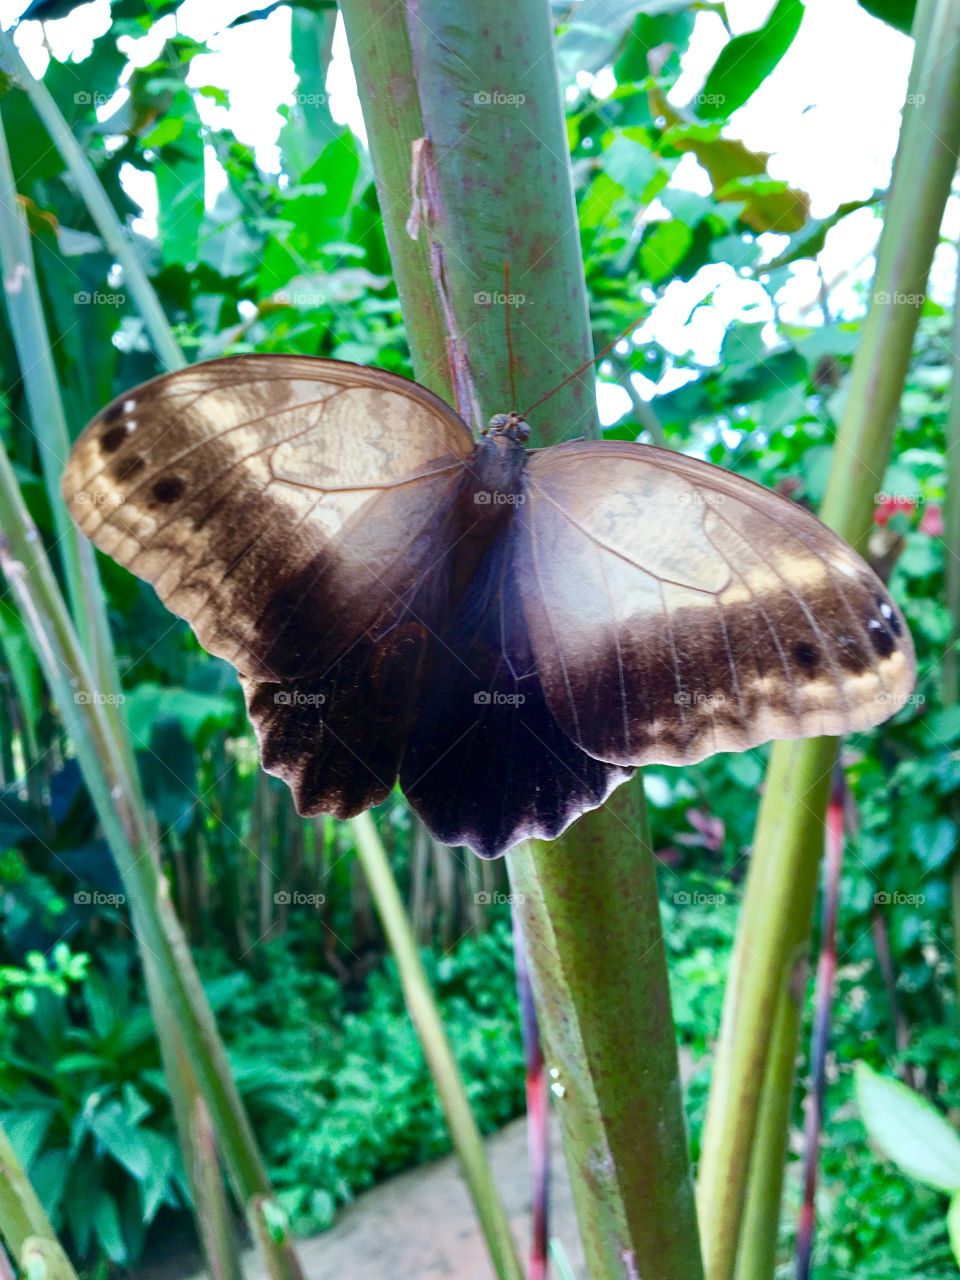 Butterfly beauty 